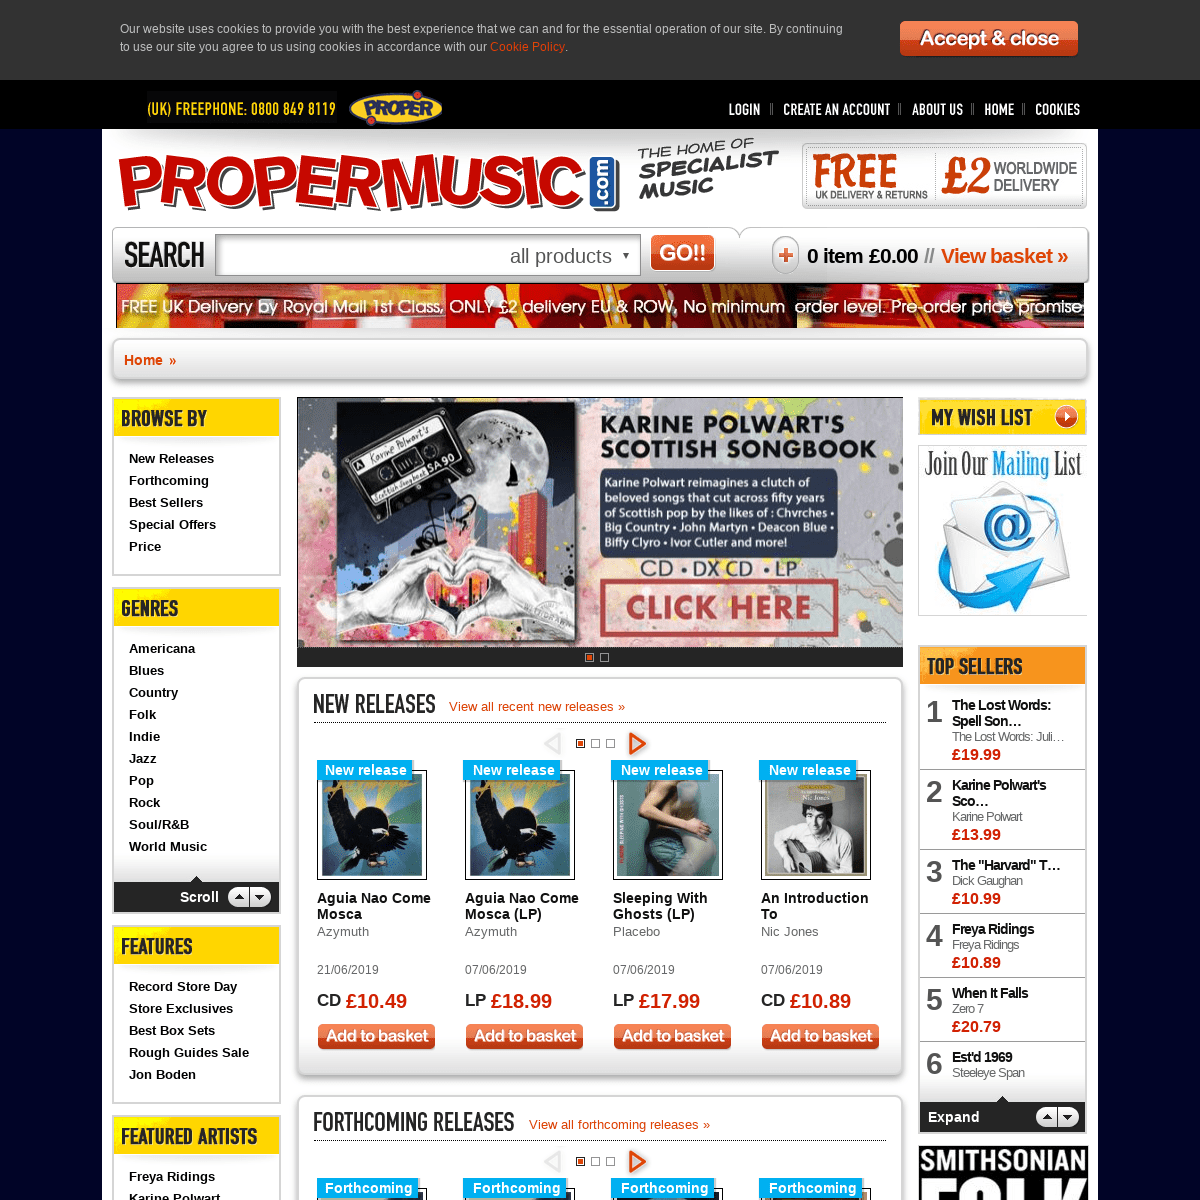 propermusic.com — The Home of Specialist Music - propermusic.com